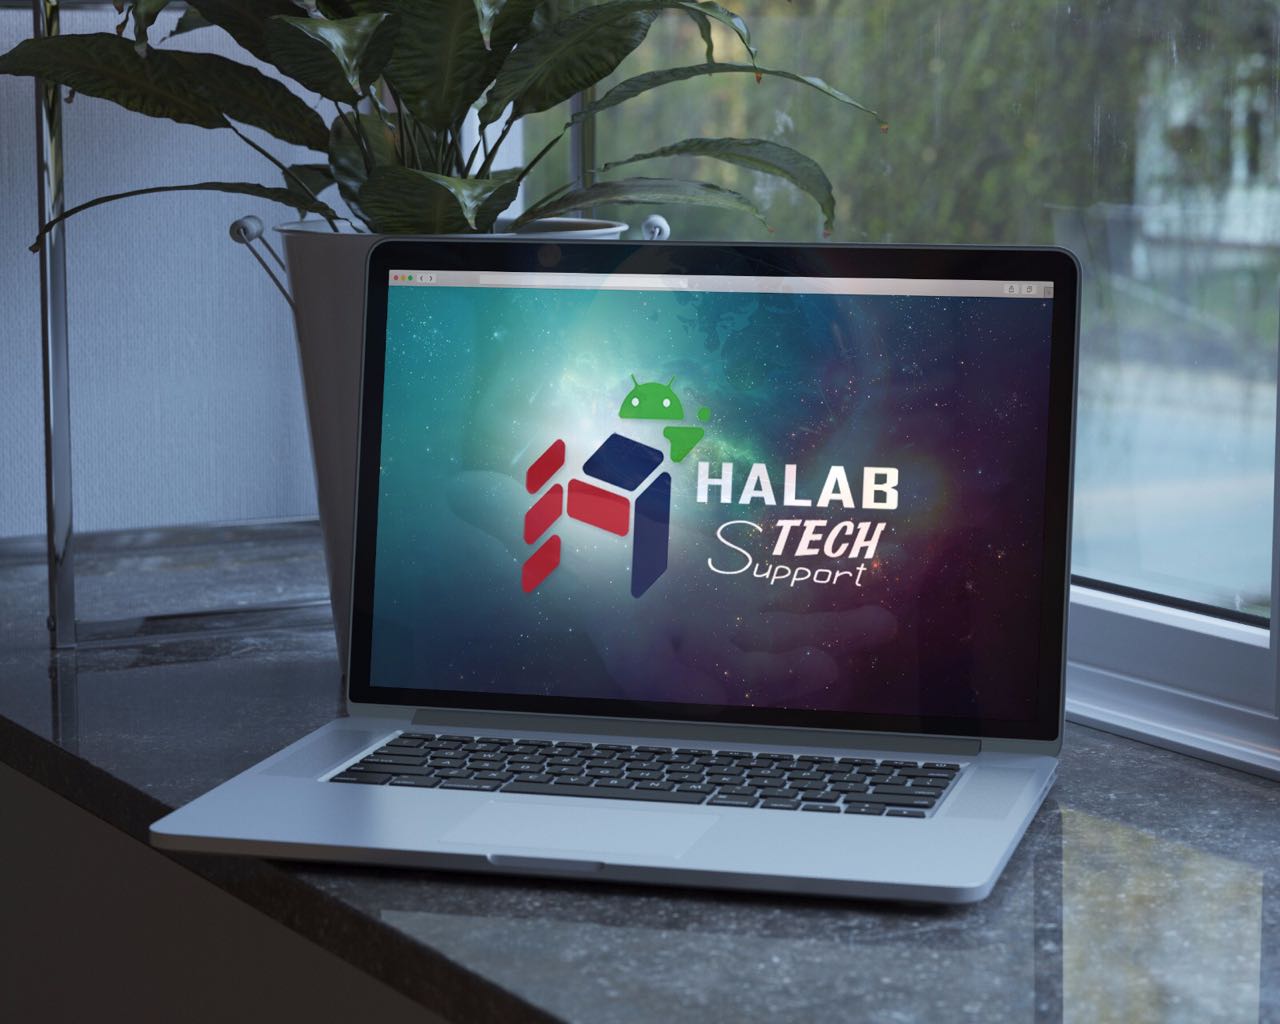 V1.3 Update on Halabtech Support